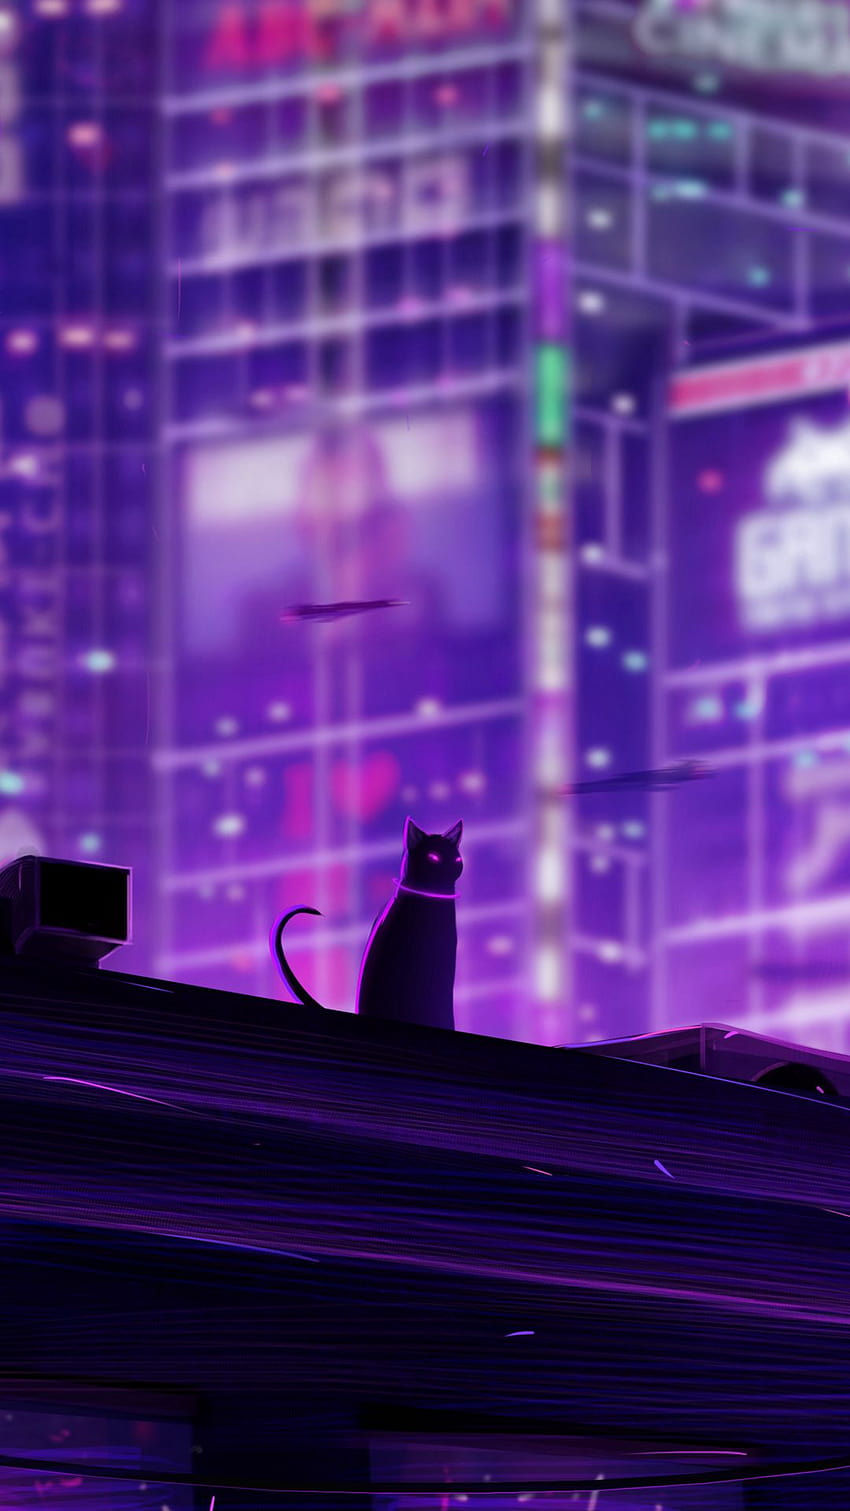 1080x1920 猫、屋根、都市、未来、ネオン、バックライト samsung galaxy s4、s5、メモ、sony xperia z、z1、z2、z3、htc one、lenovo の雰囲気の背景、紫の猫 HD電話の壁紙